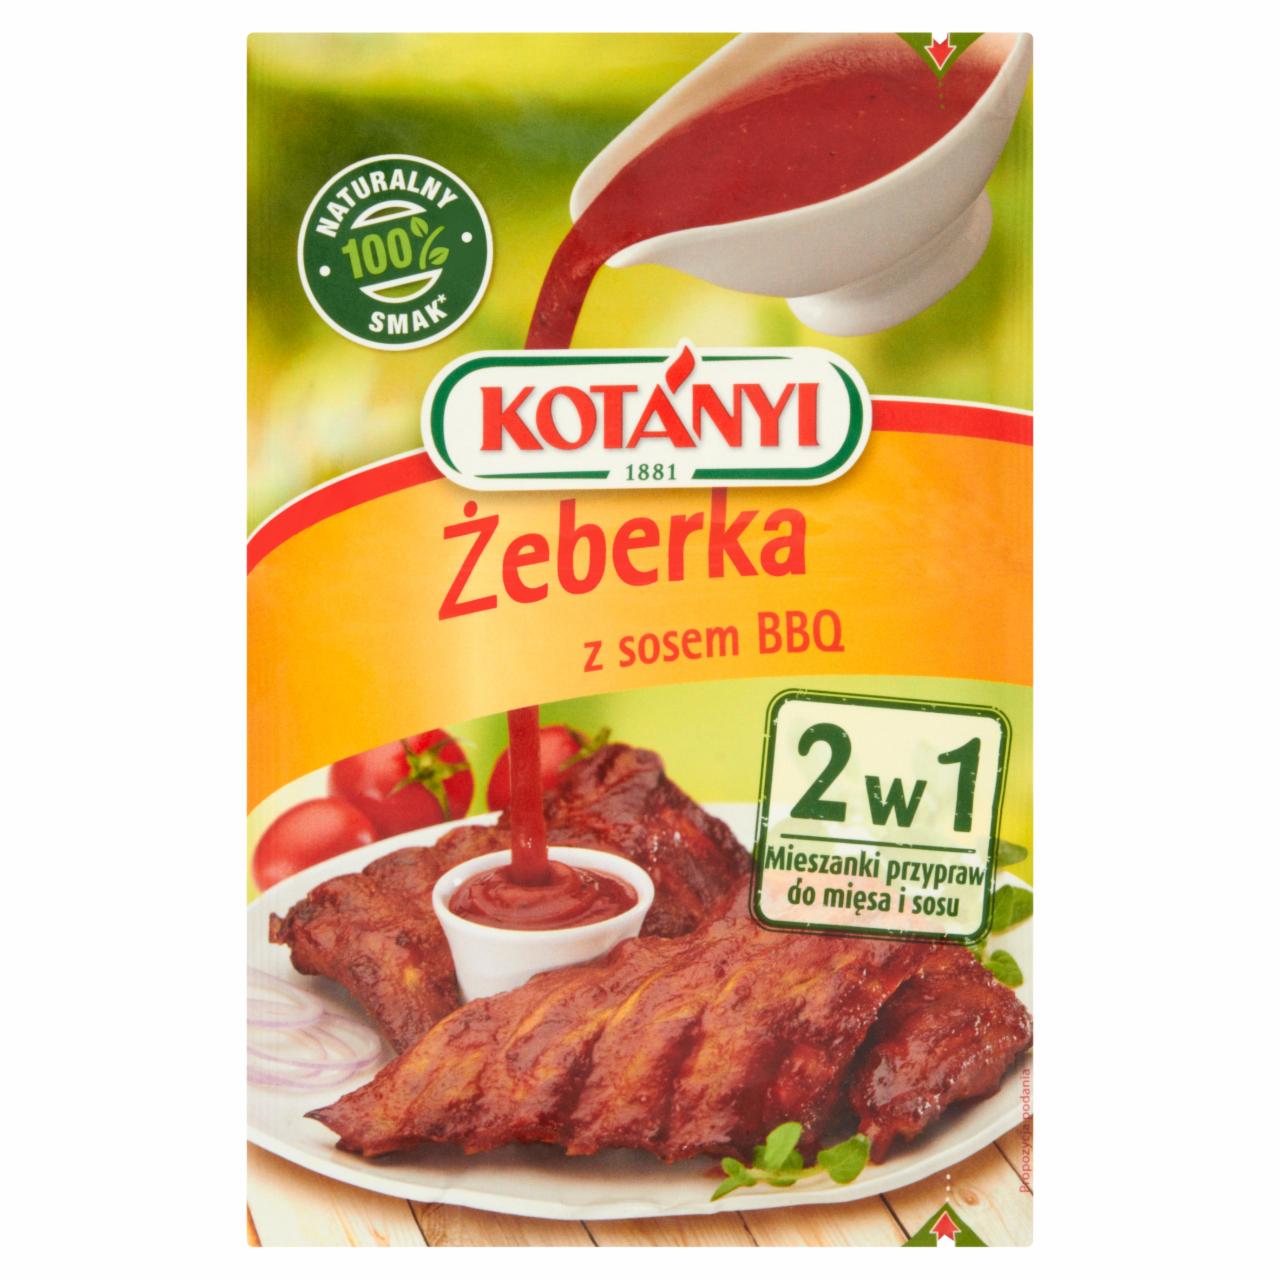 Zdjęcia - Kotányi 2w1 Żeberka z sosem BBQ Mieszanki przypraw do mięsa i sosu 37 g